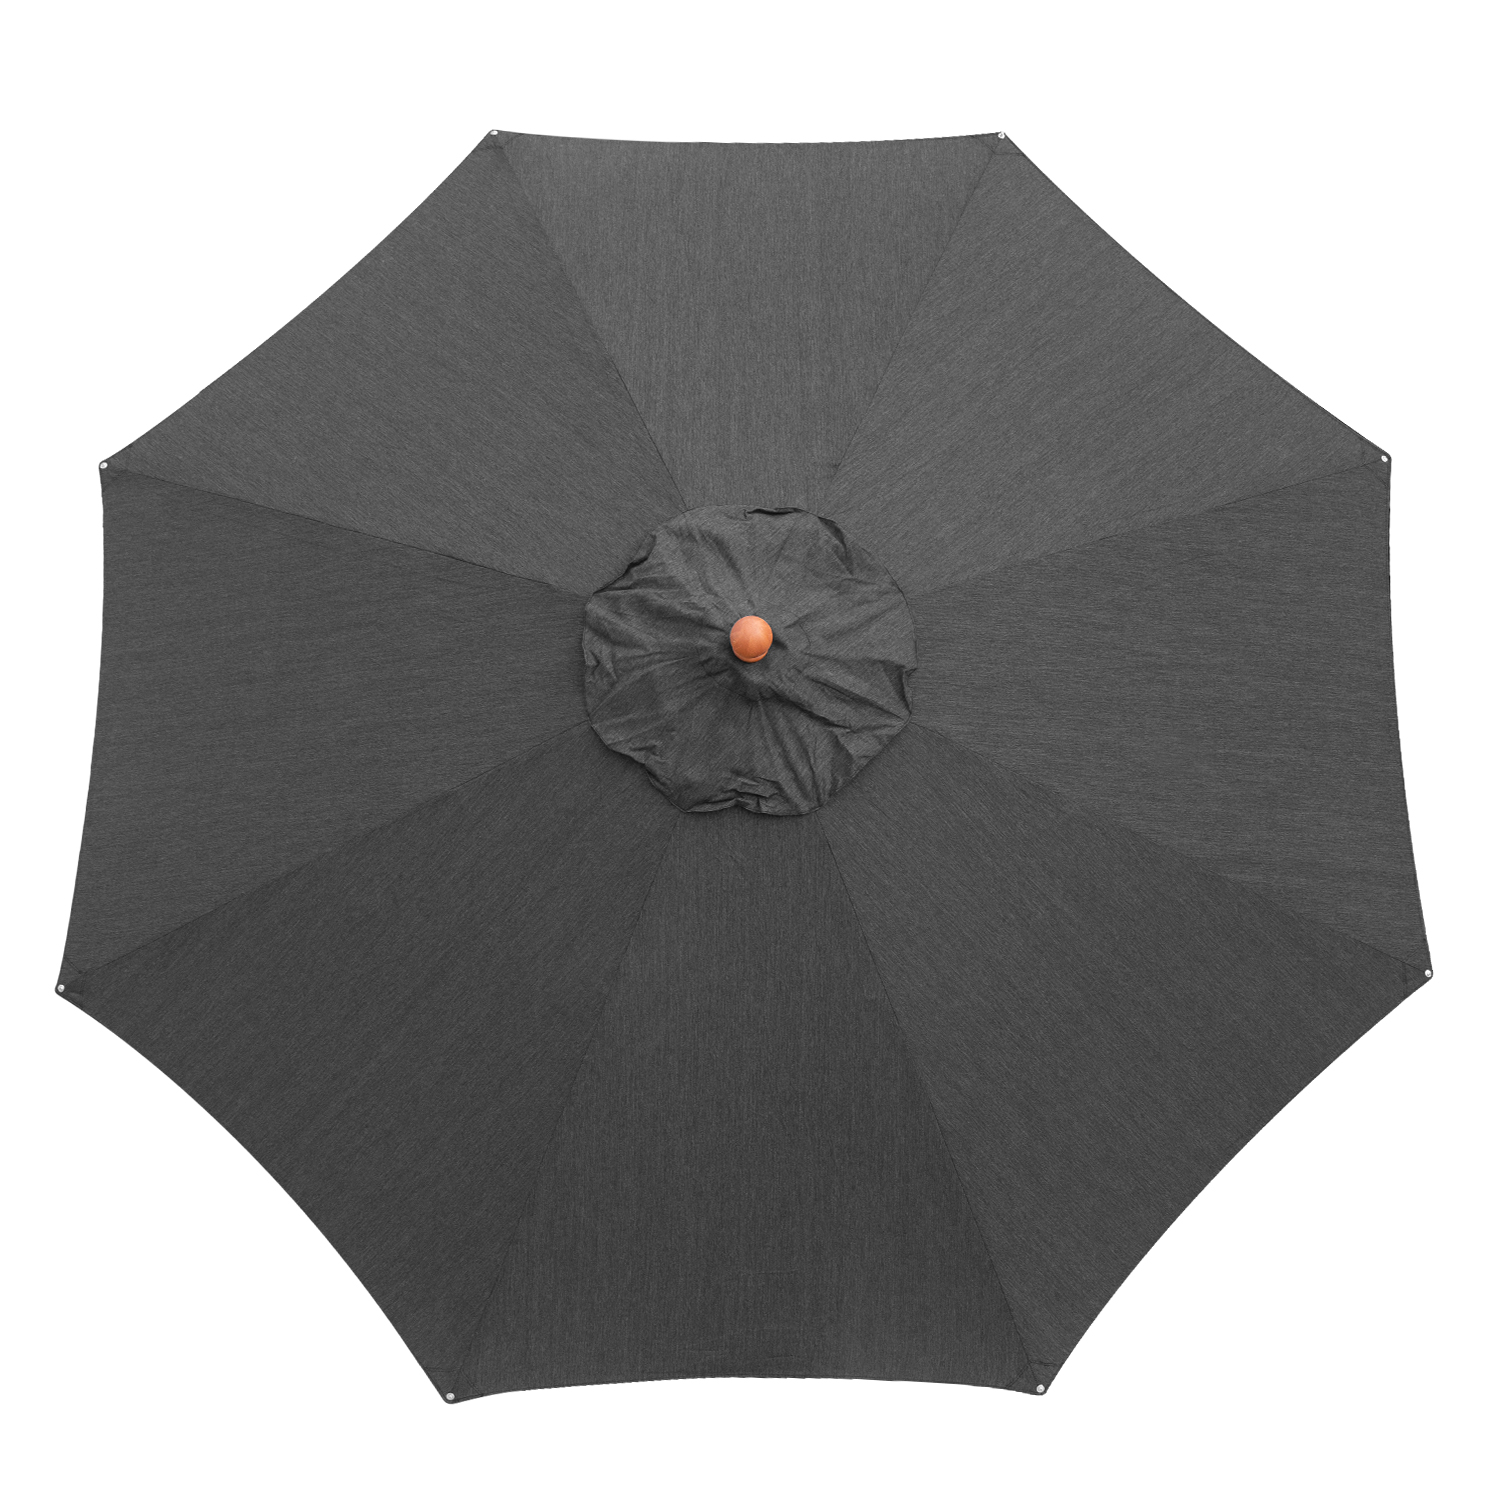 anndora Sonnenschirm 3m rund aus Olefin in anthrazit Winddach UV-Schutz - 4